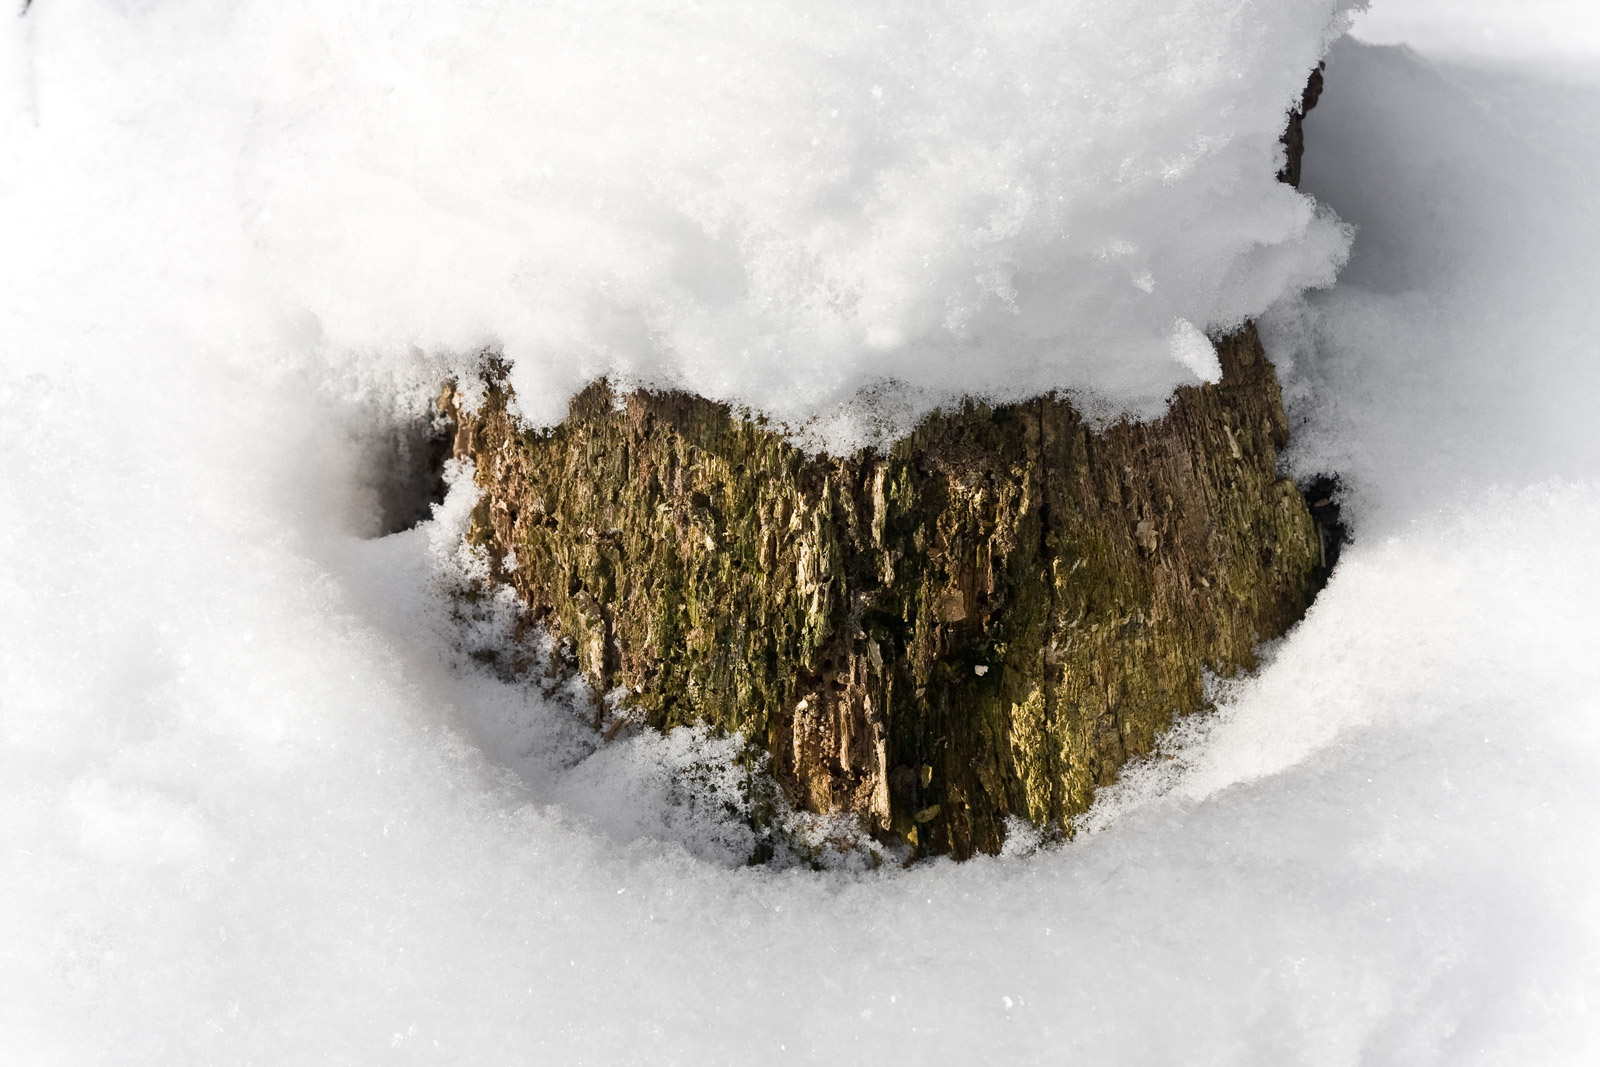 butwiejący pień w mogilańskim lesie w śnieżnej pokrywie